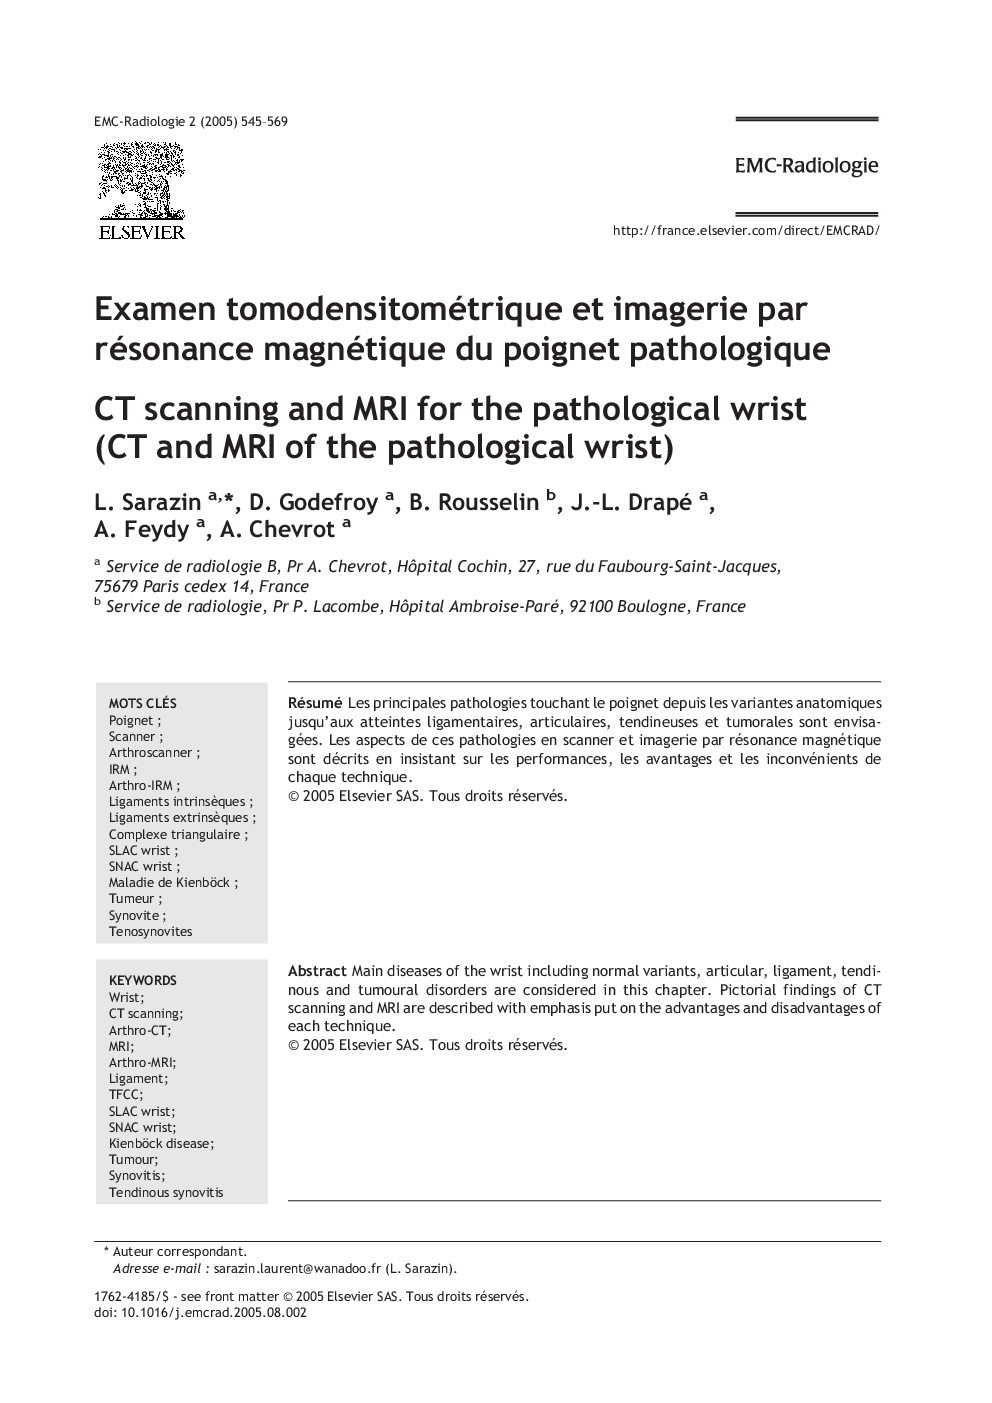 Examen tomodensitométrique et imagerie par résonance magnétique du poignet pathologique